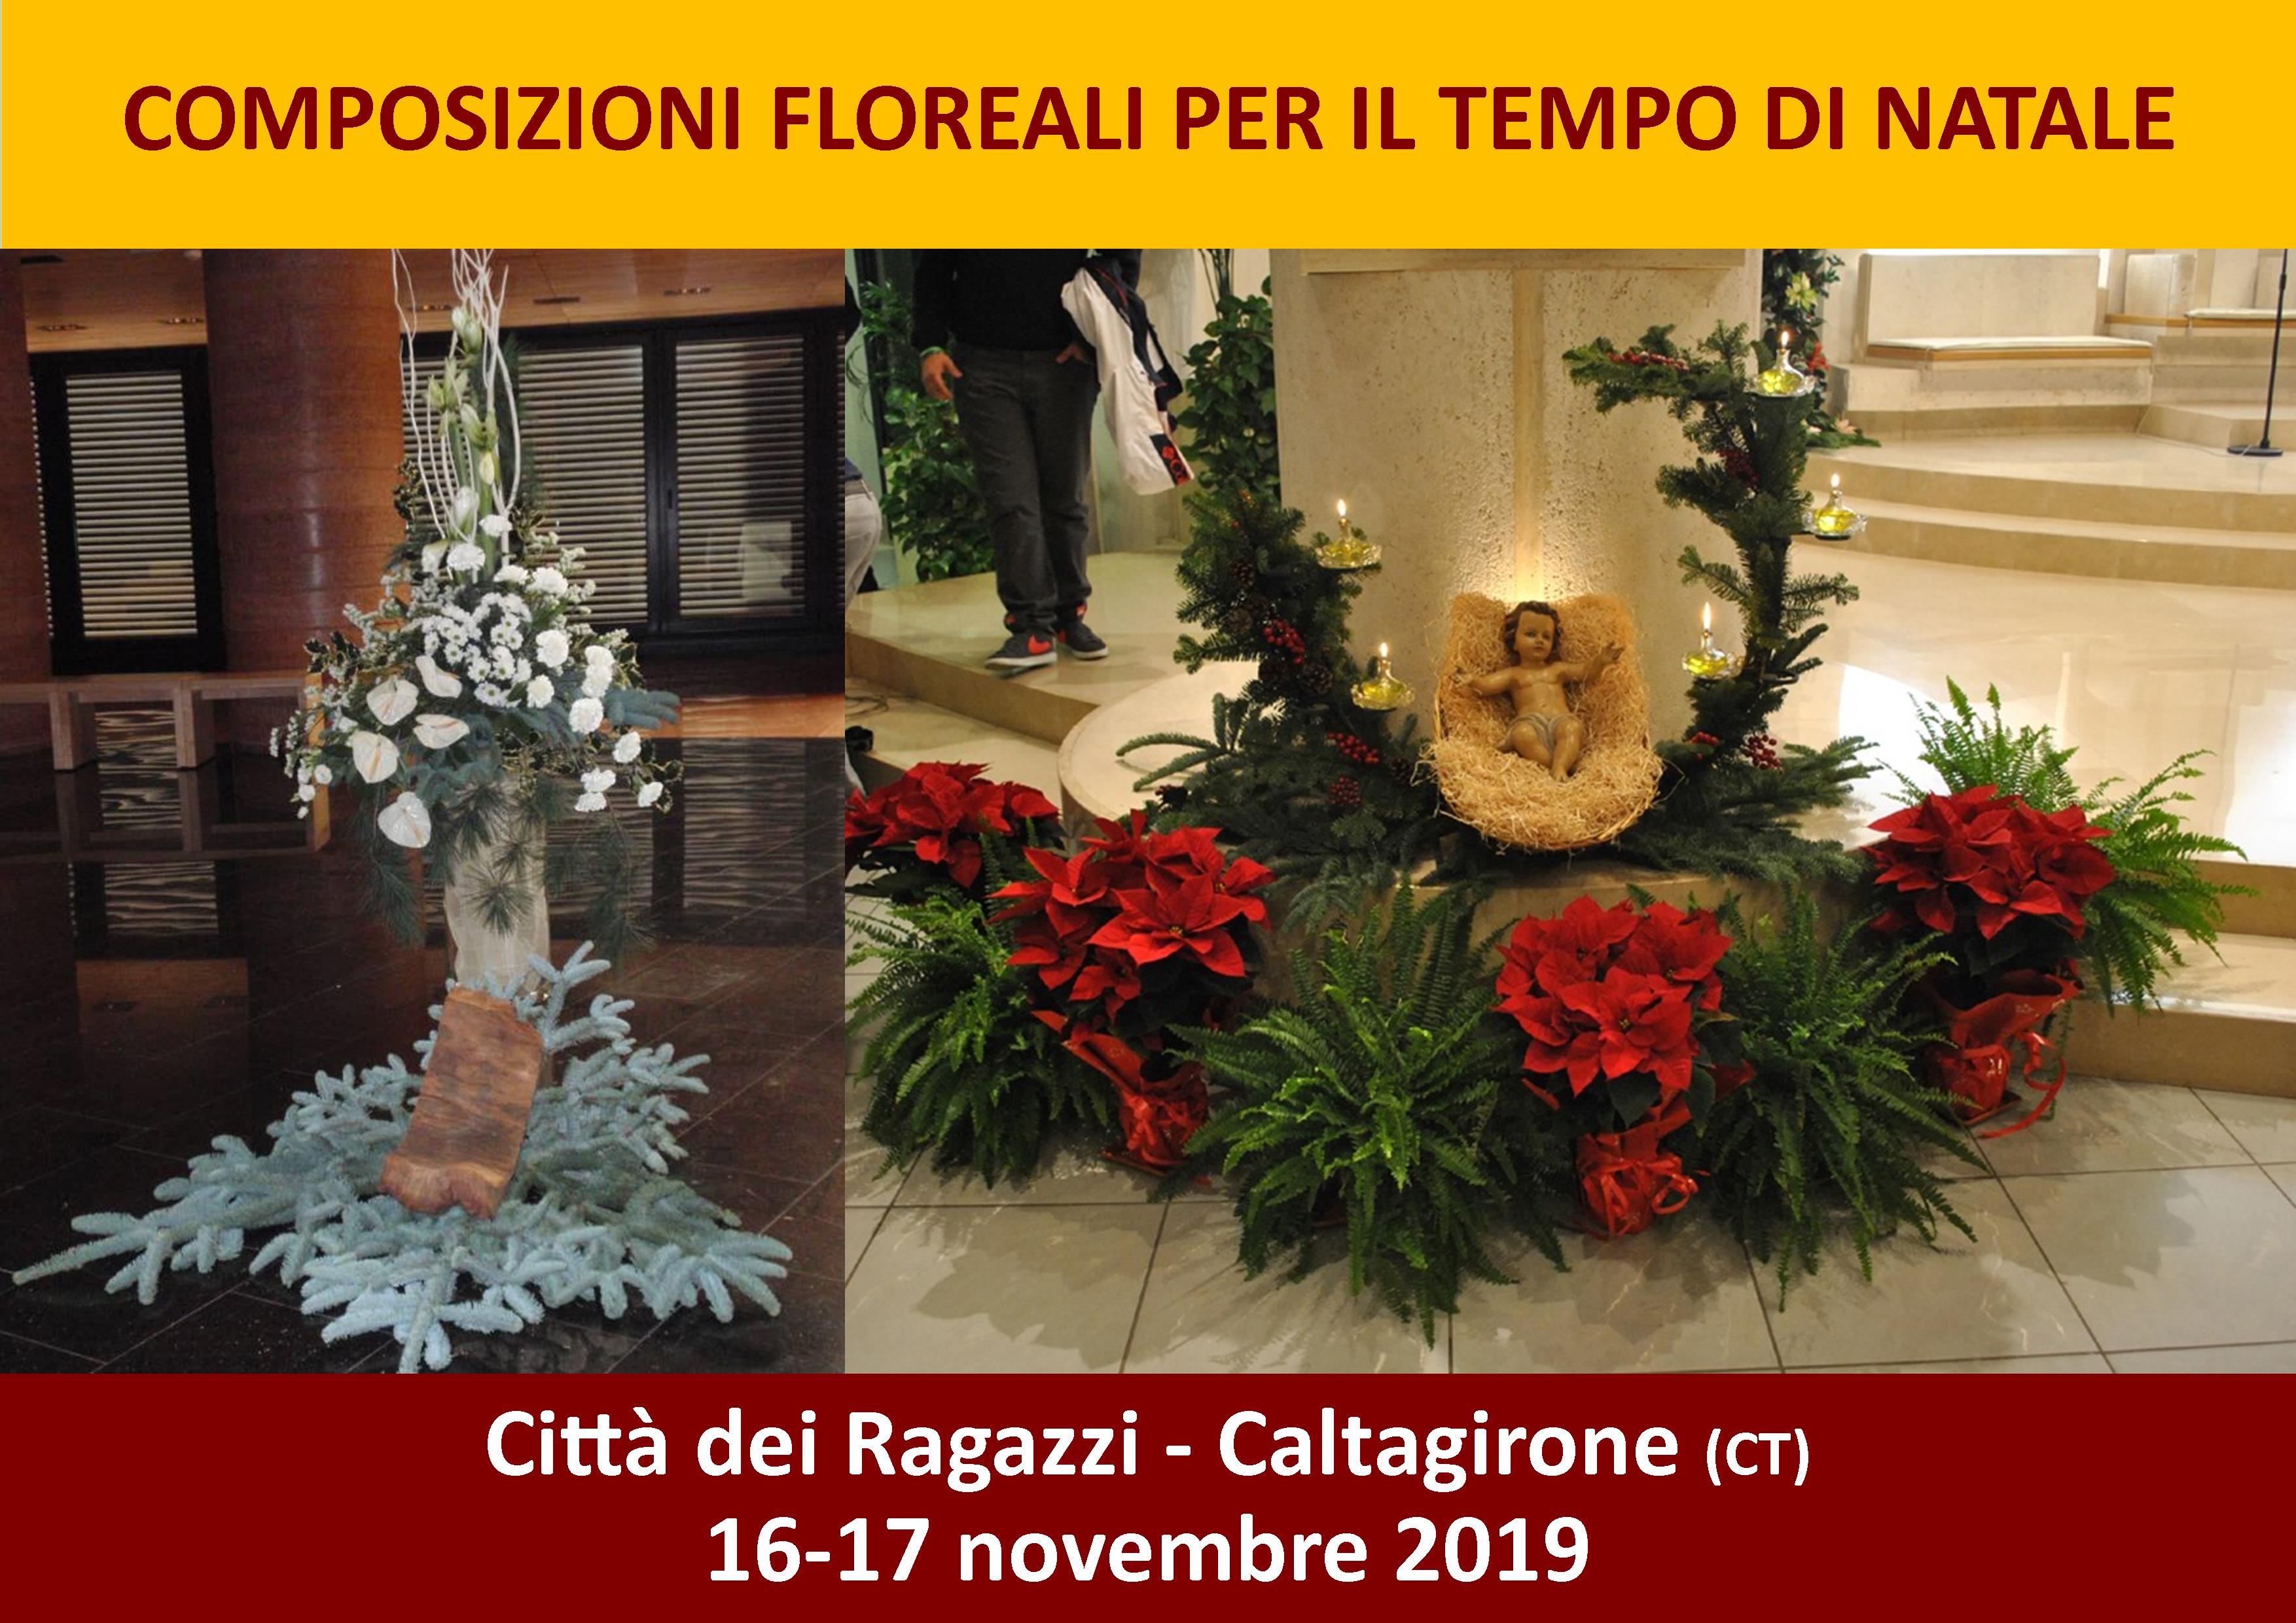 Decorazioni Floreali Natalizie.Composizioni Floreali Per Il Tempo Di Natale Synesio La Tenda Delle Idee